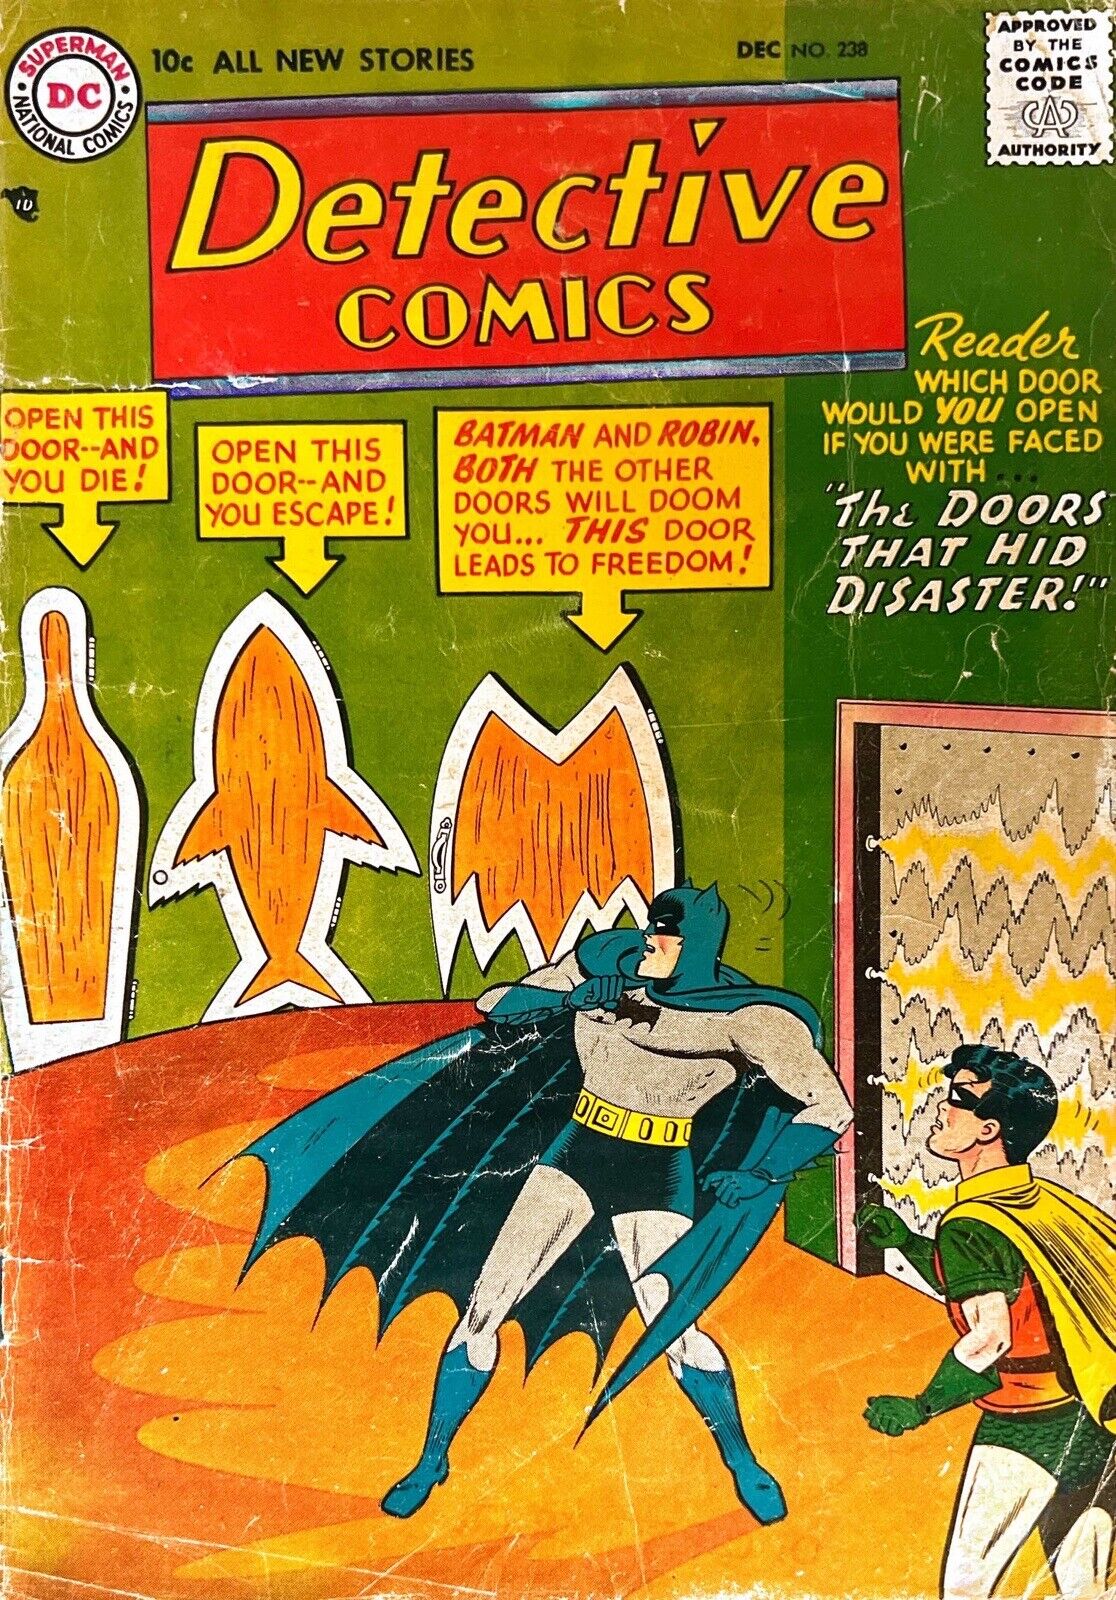 DETECTIVE COMICS 238 BATMAN DOOR THAT HID DISASTER MOLDOFF DC COMICS